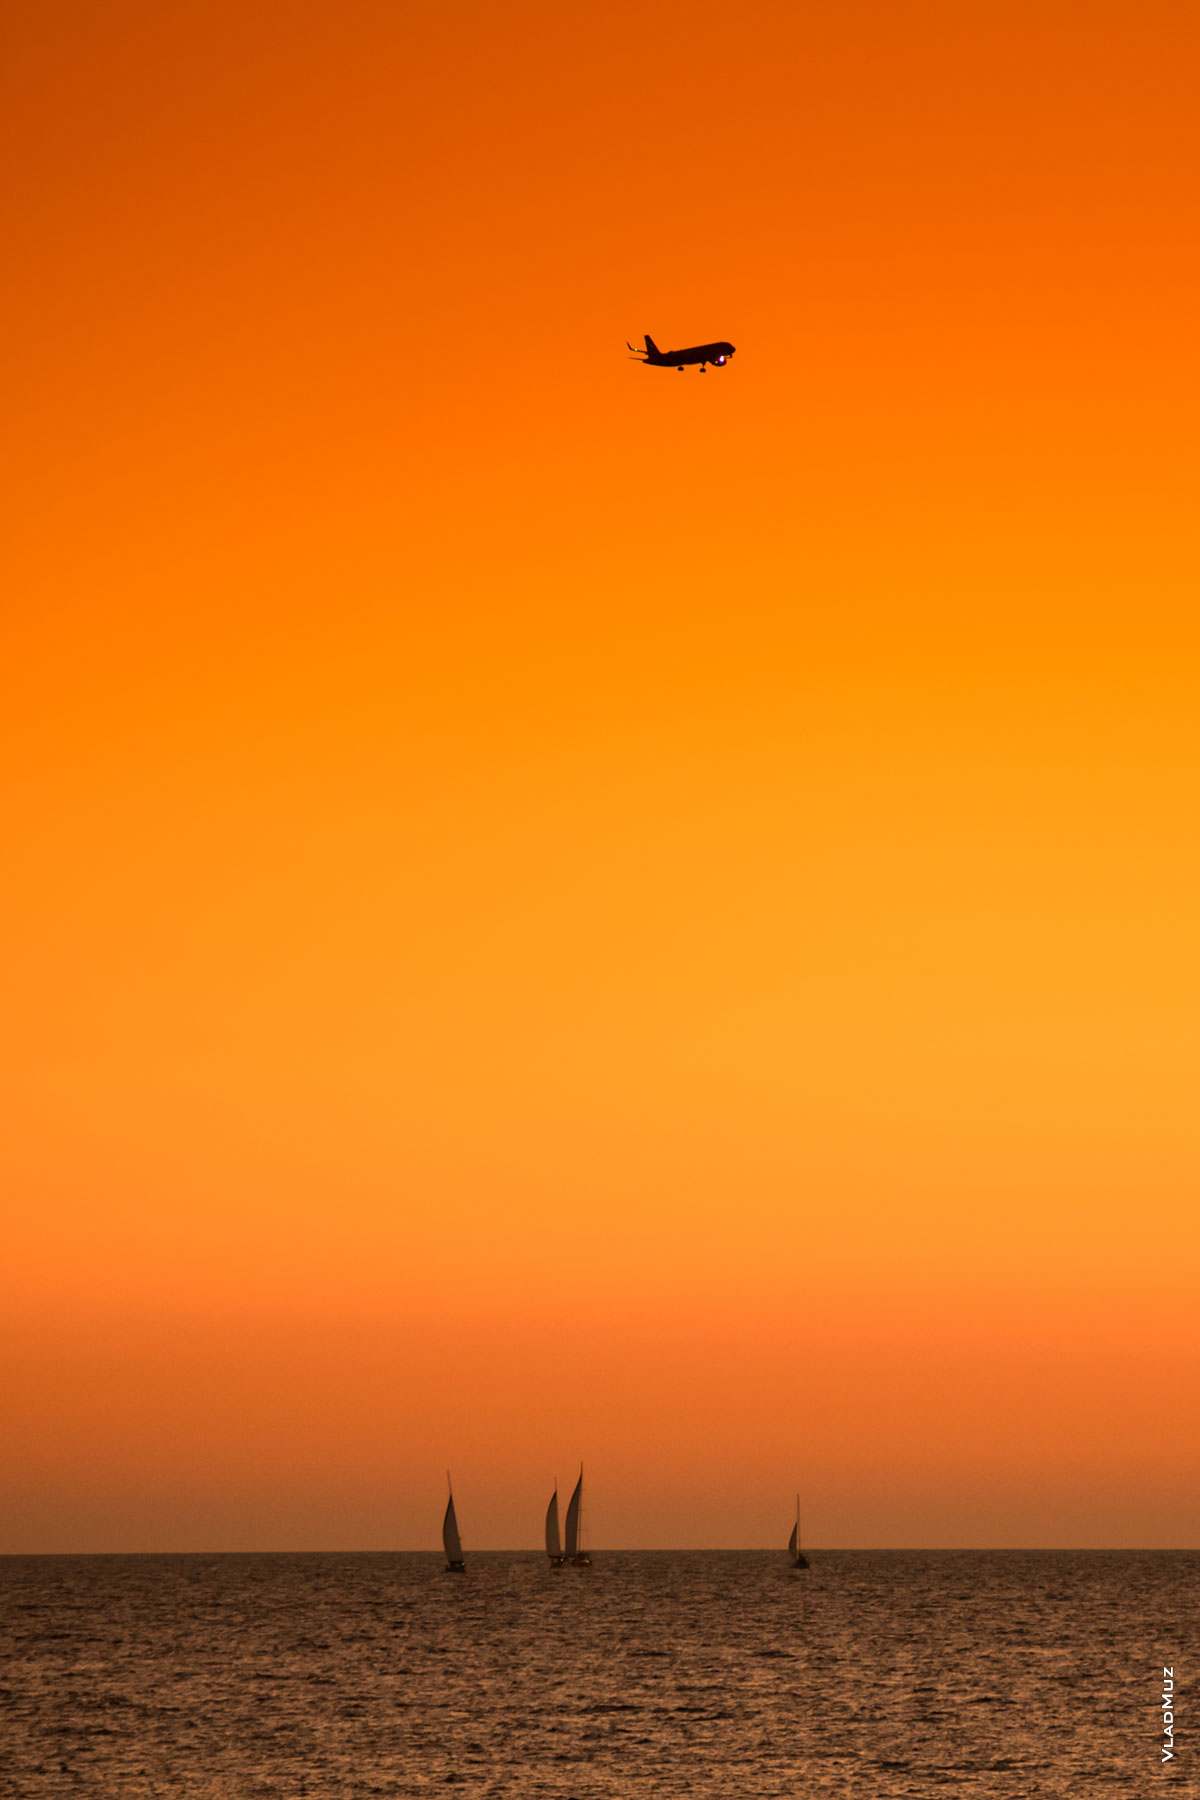 Фото яхт в море и самолета в небе Адлера после заката солнца. Морской фотопейзаж